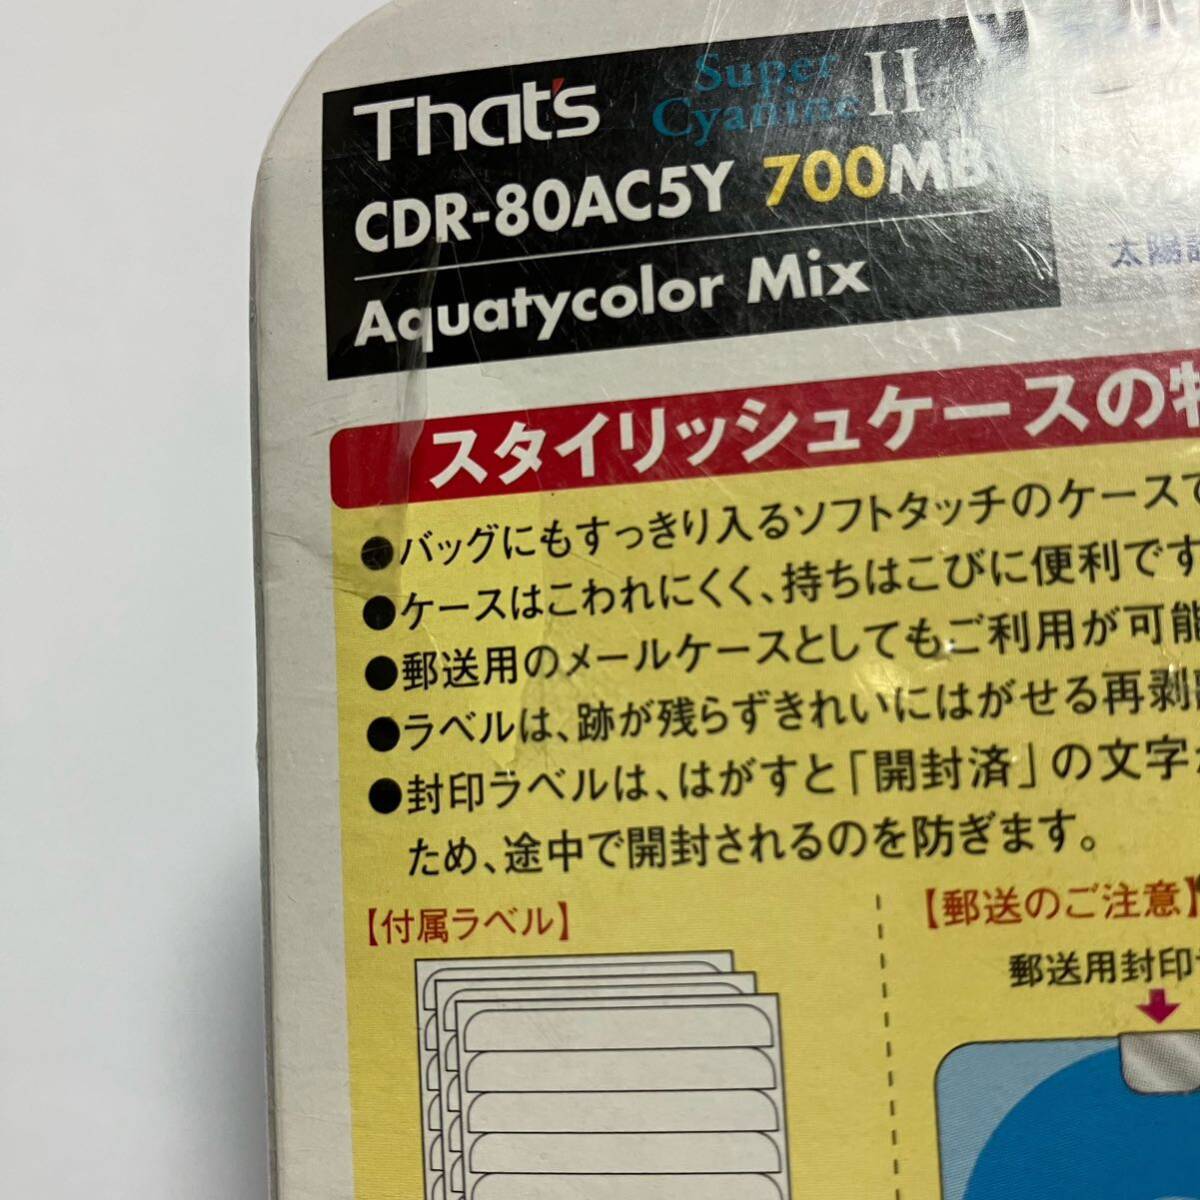 【未使用品】 That's CD-R 700MB ザッツ 32倍 太陽誘電 CDR-80AC5Y20MN 20枚入り 日本製 _画像8